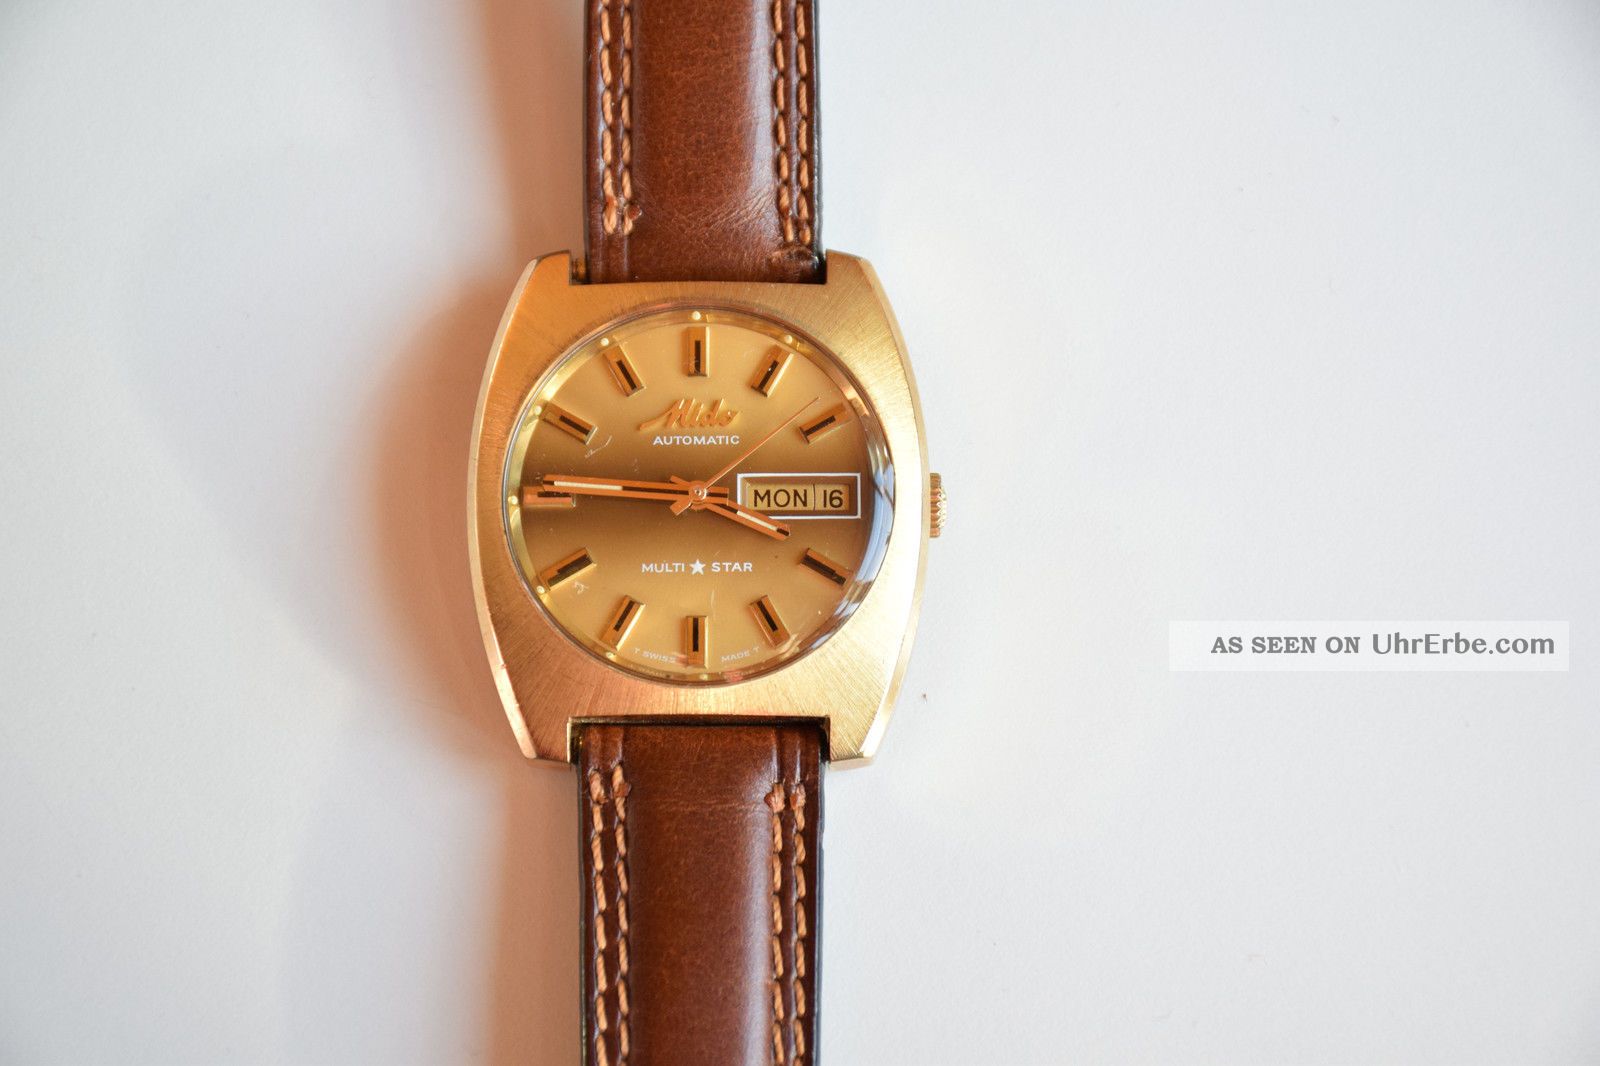 Mido Automatic Multi Star Mechanische Schweizer Uhr Armbanduhren Bild